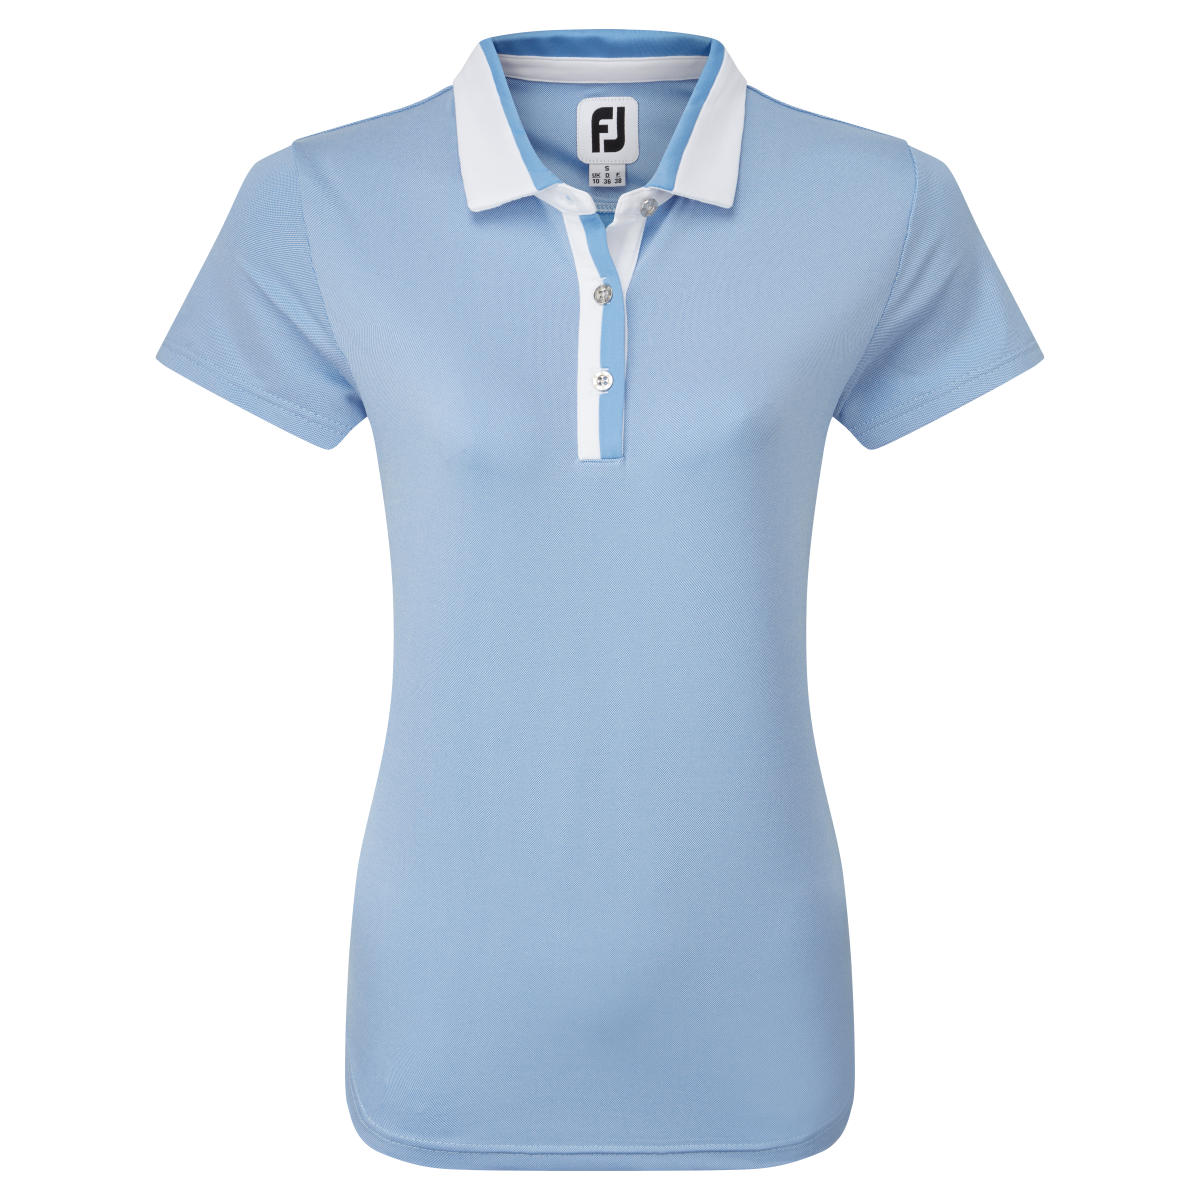 Levně FootJoy Birdseye dámské golfové triko, světle modré